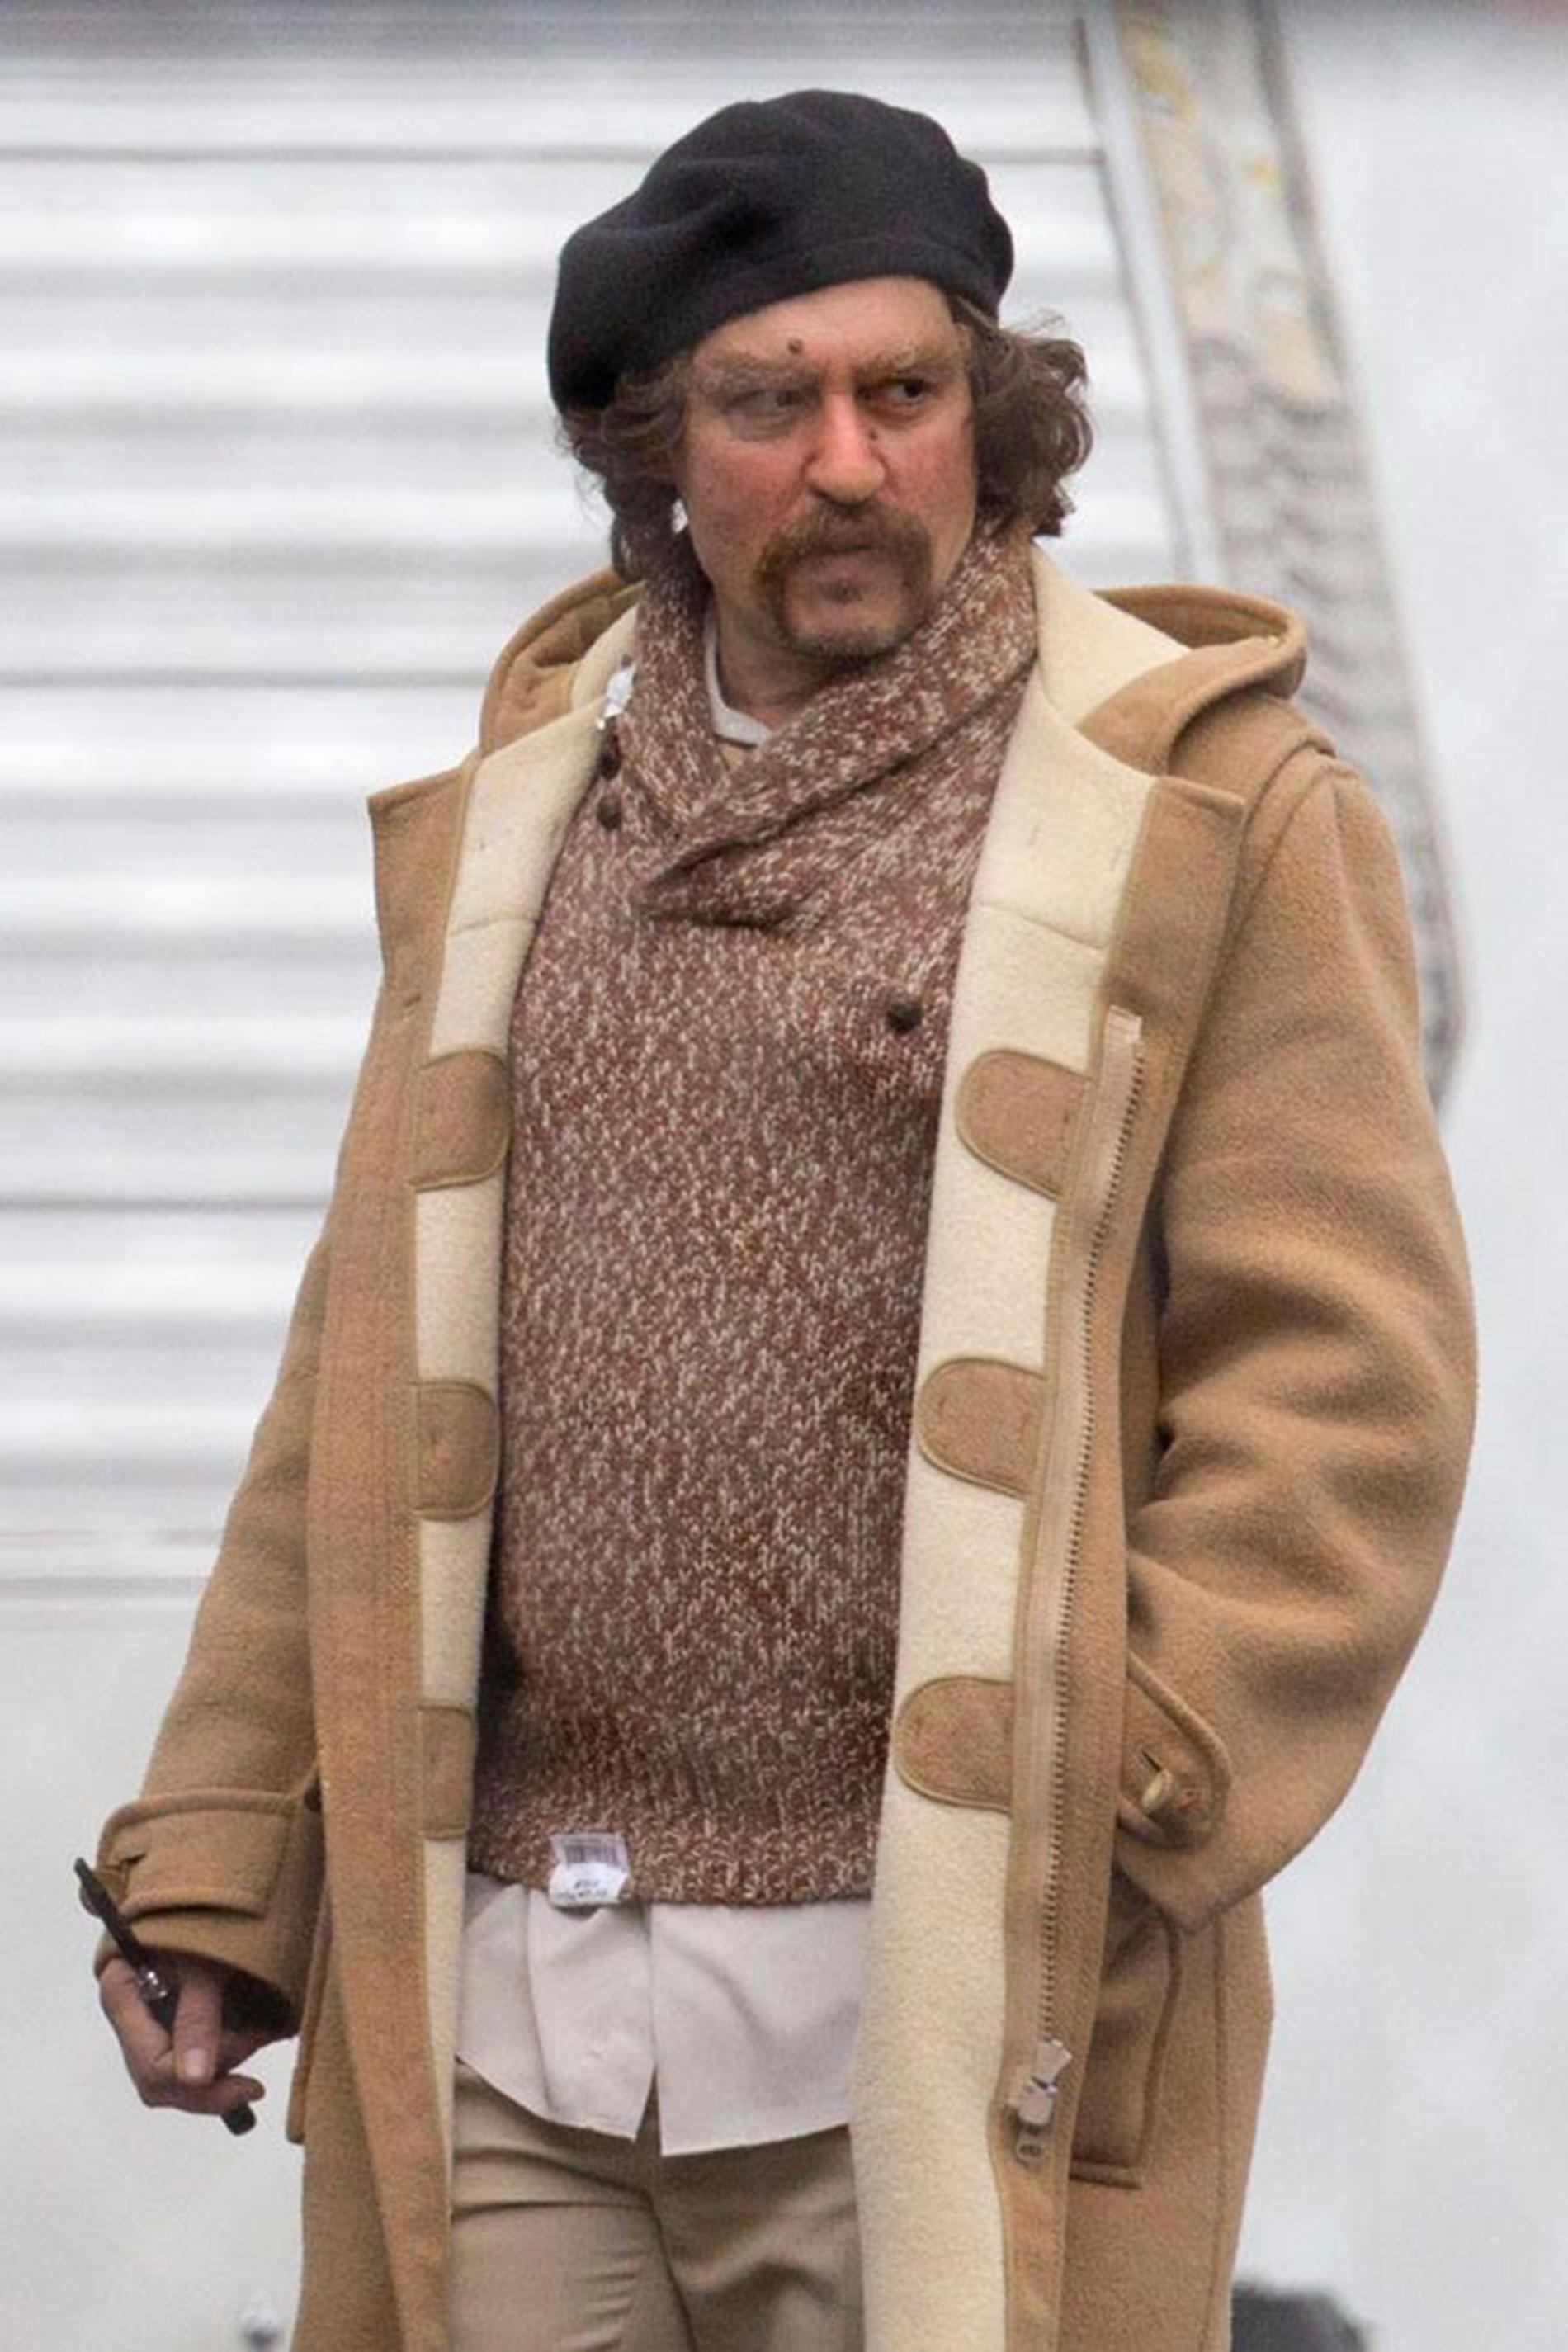 Johnny Depp oigenkännbar i mundering under filminspelning.